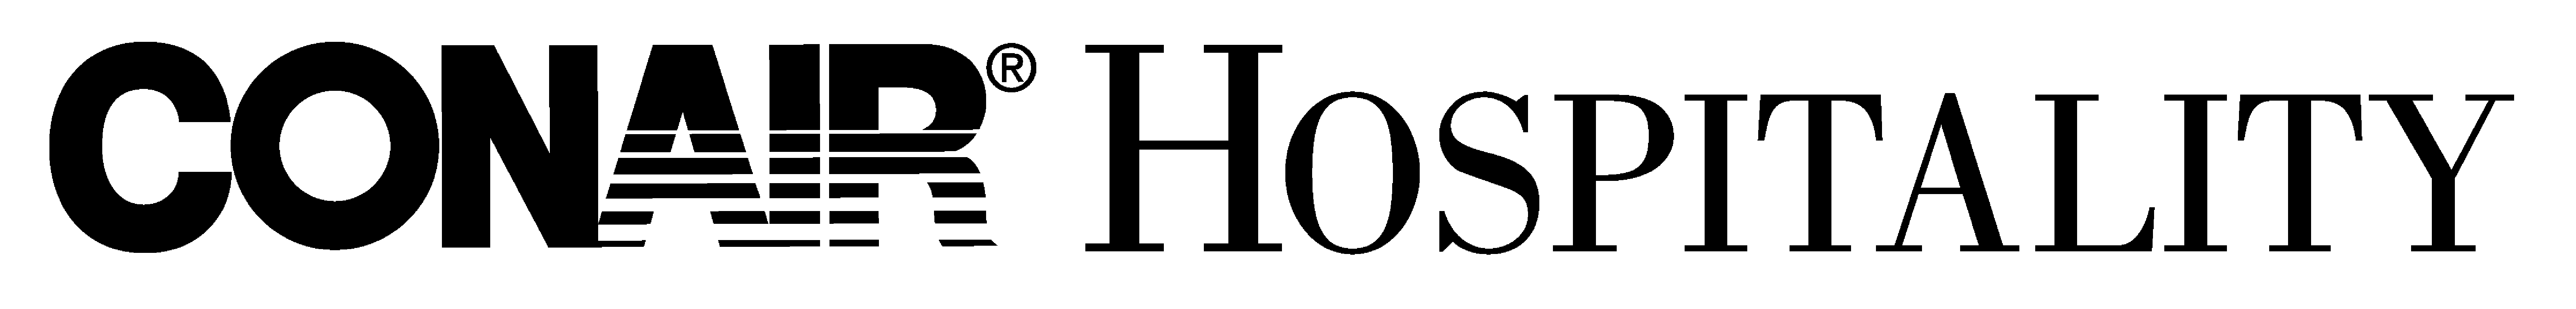 conair-hospitality-logo